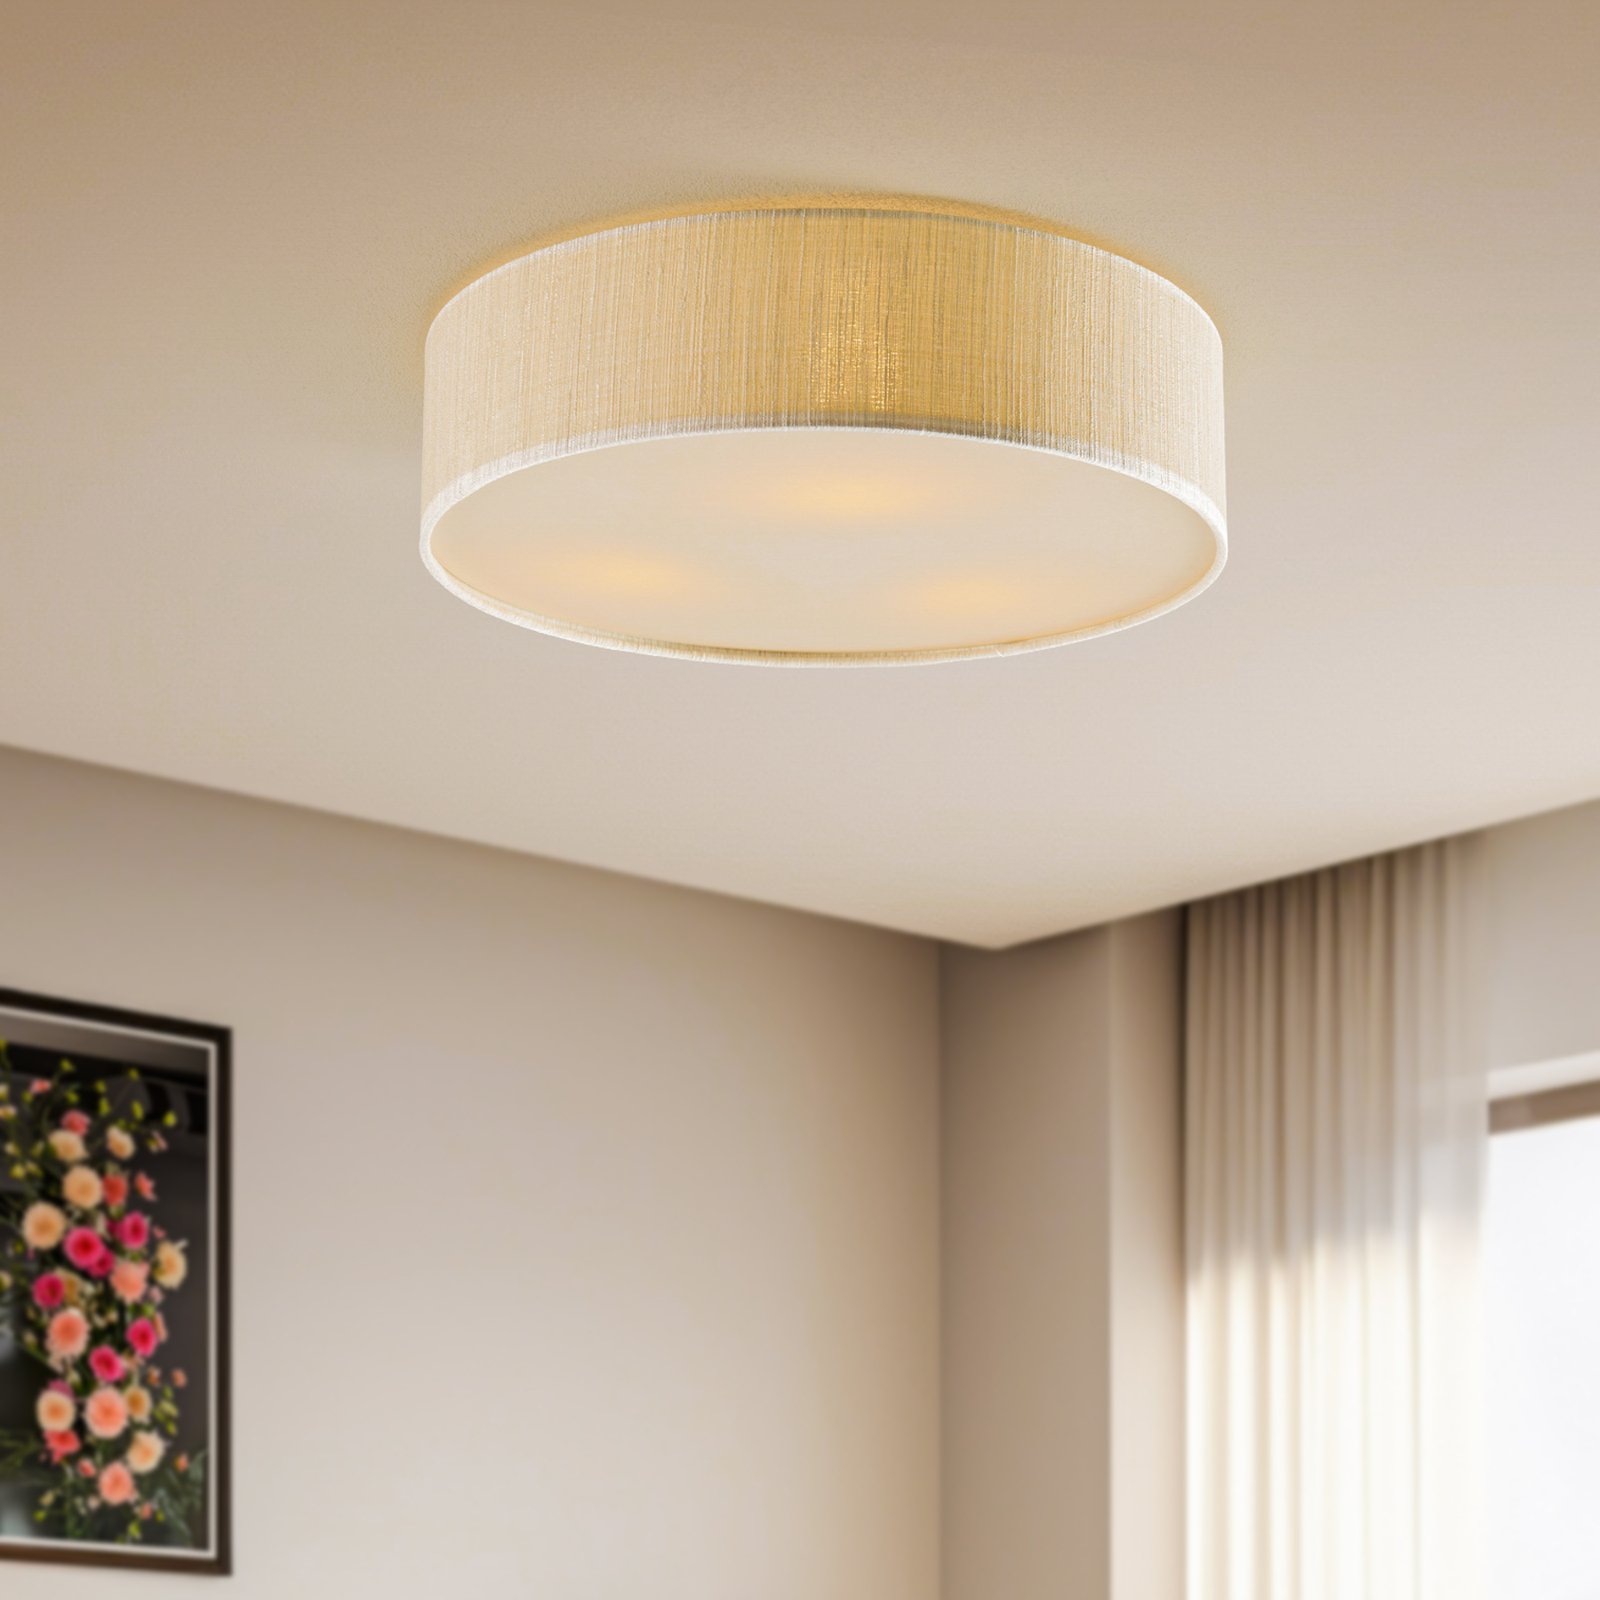 Turda ceiling light, Ø 50 cm, white